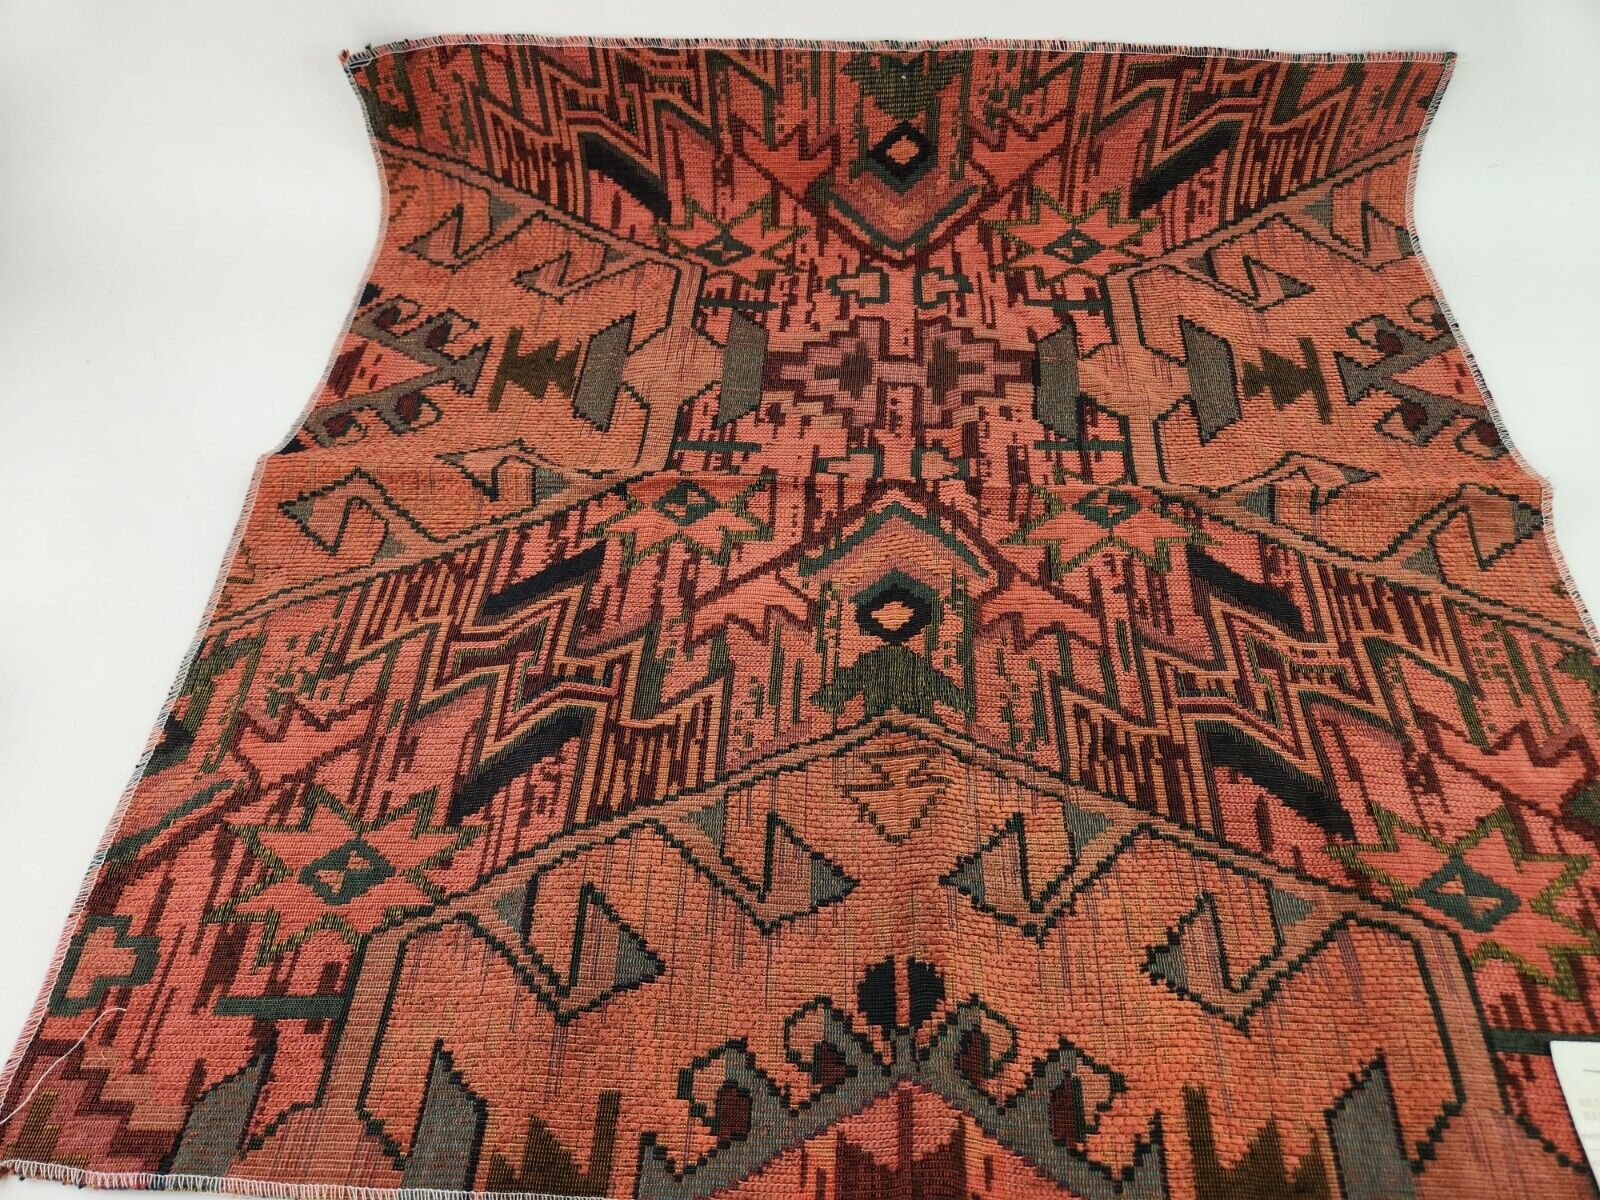 Fairmount Vtg Upholstery Fabric Sample Maroon Reddish Brown Southwestern Design